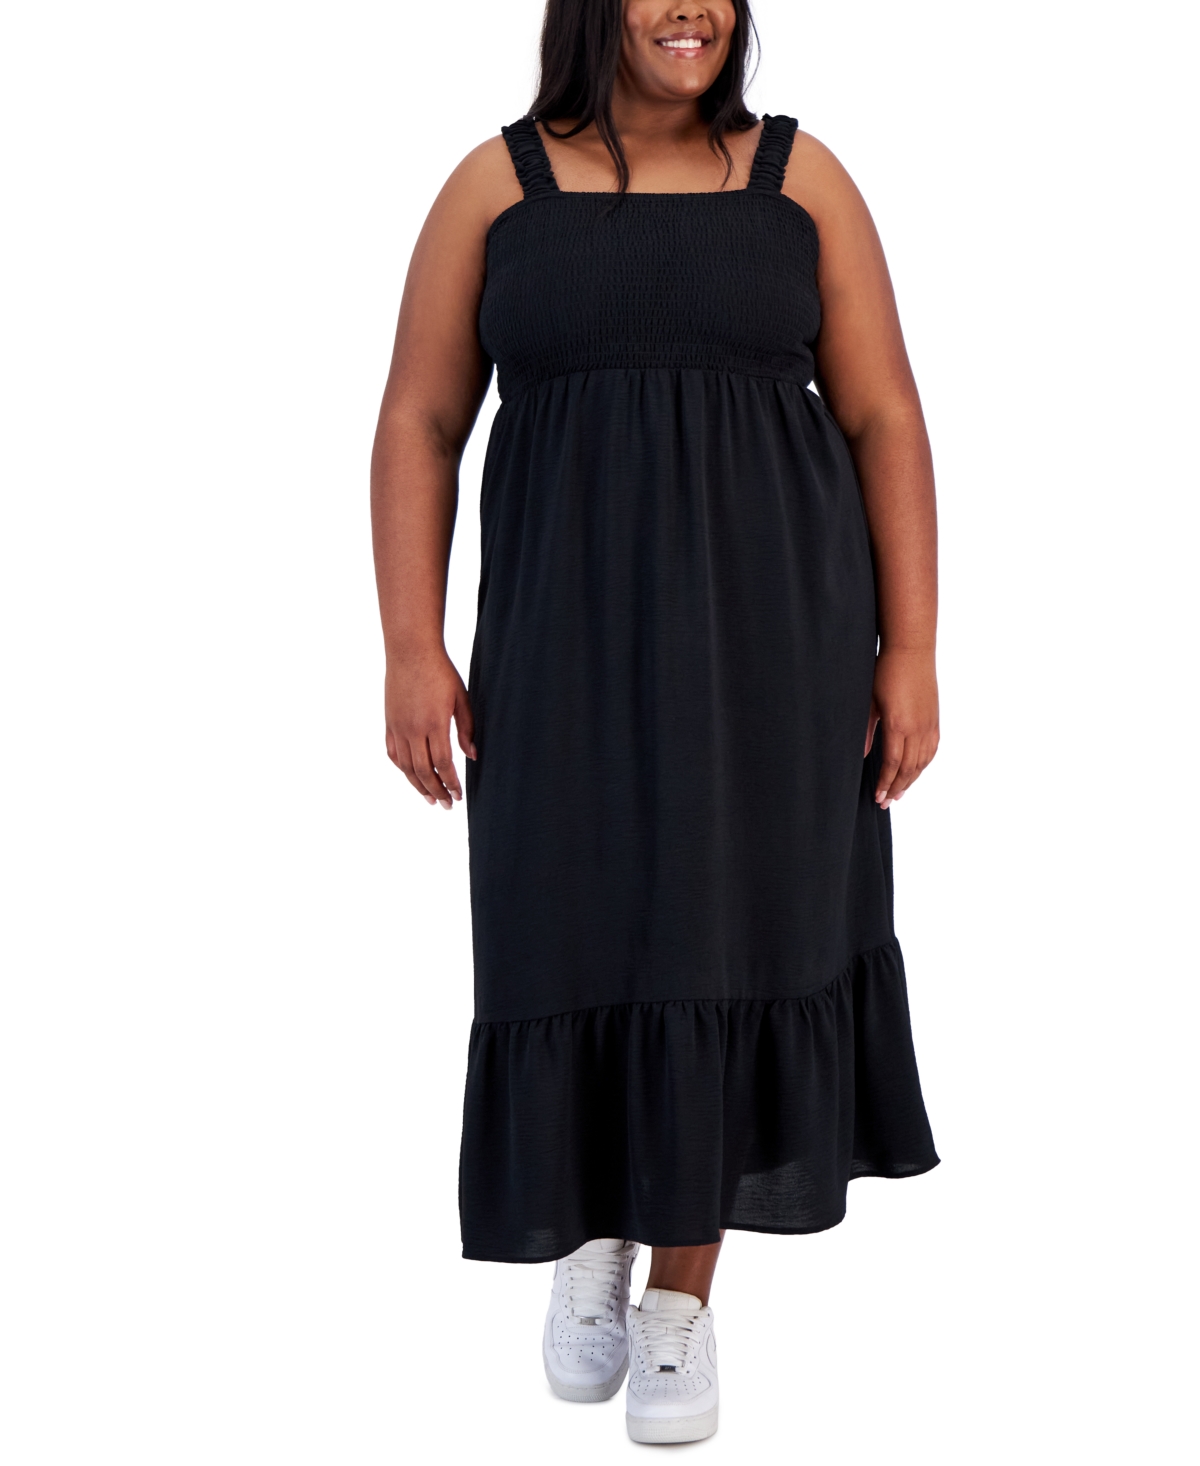 Derek Heart Trendy Plus Size Straight-neck Smocked Dress In Black Beauty